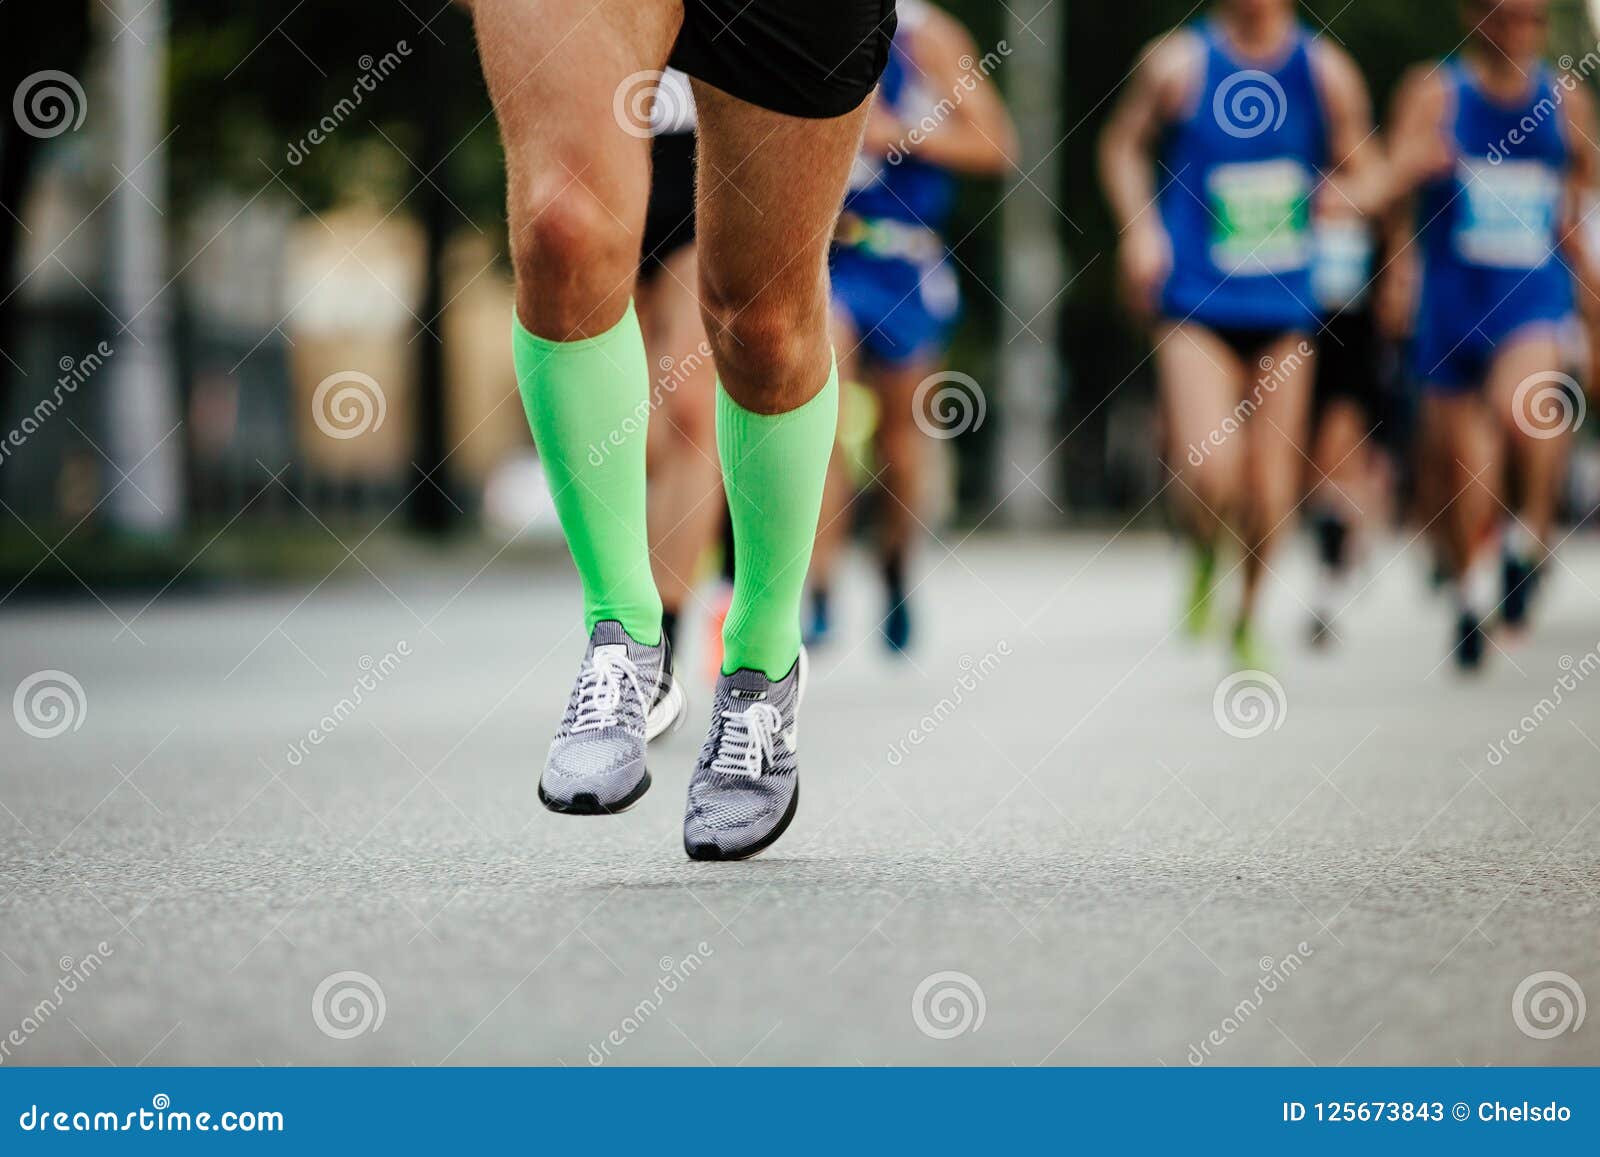 Men legs of runner athlete stock image. Image of running - 125673843